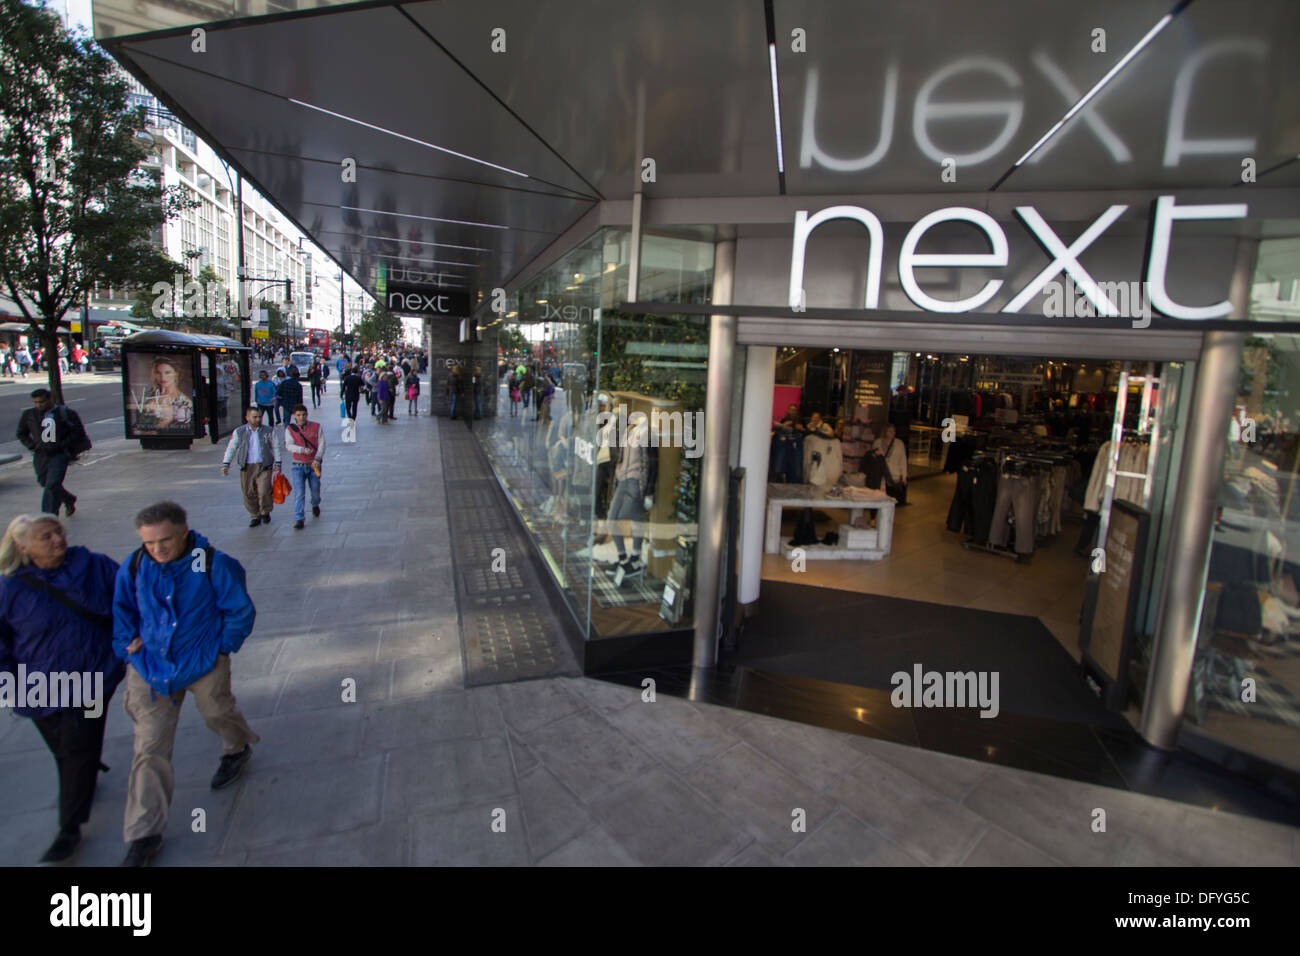 Next retail outlet Oxford Street London Stock Photo